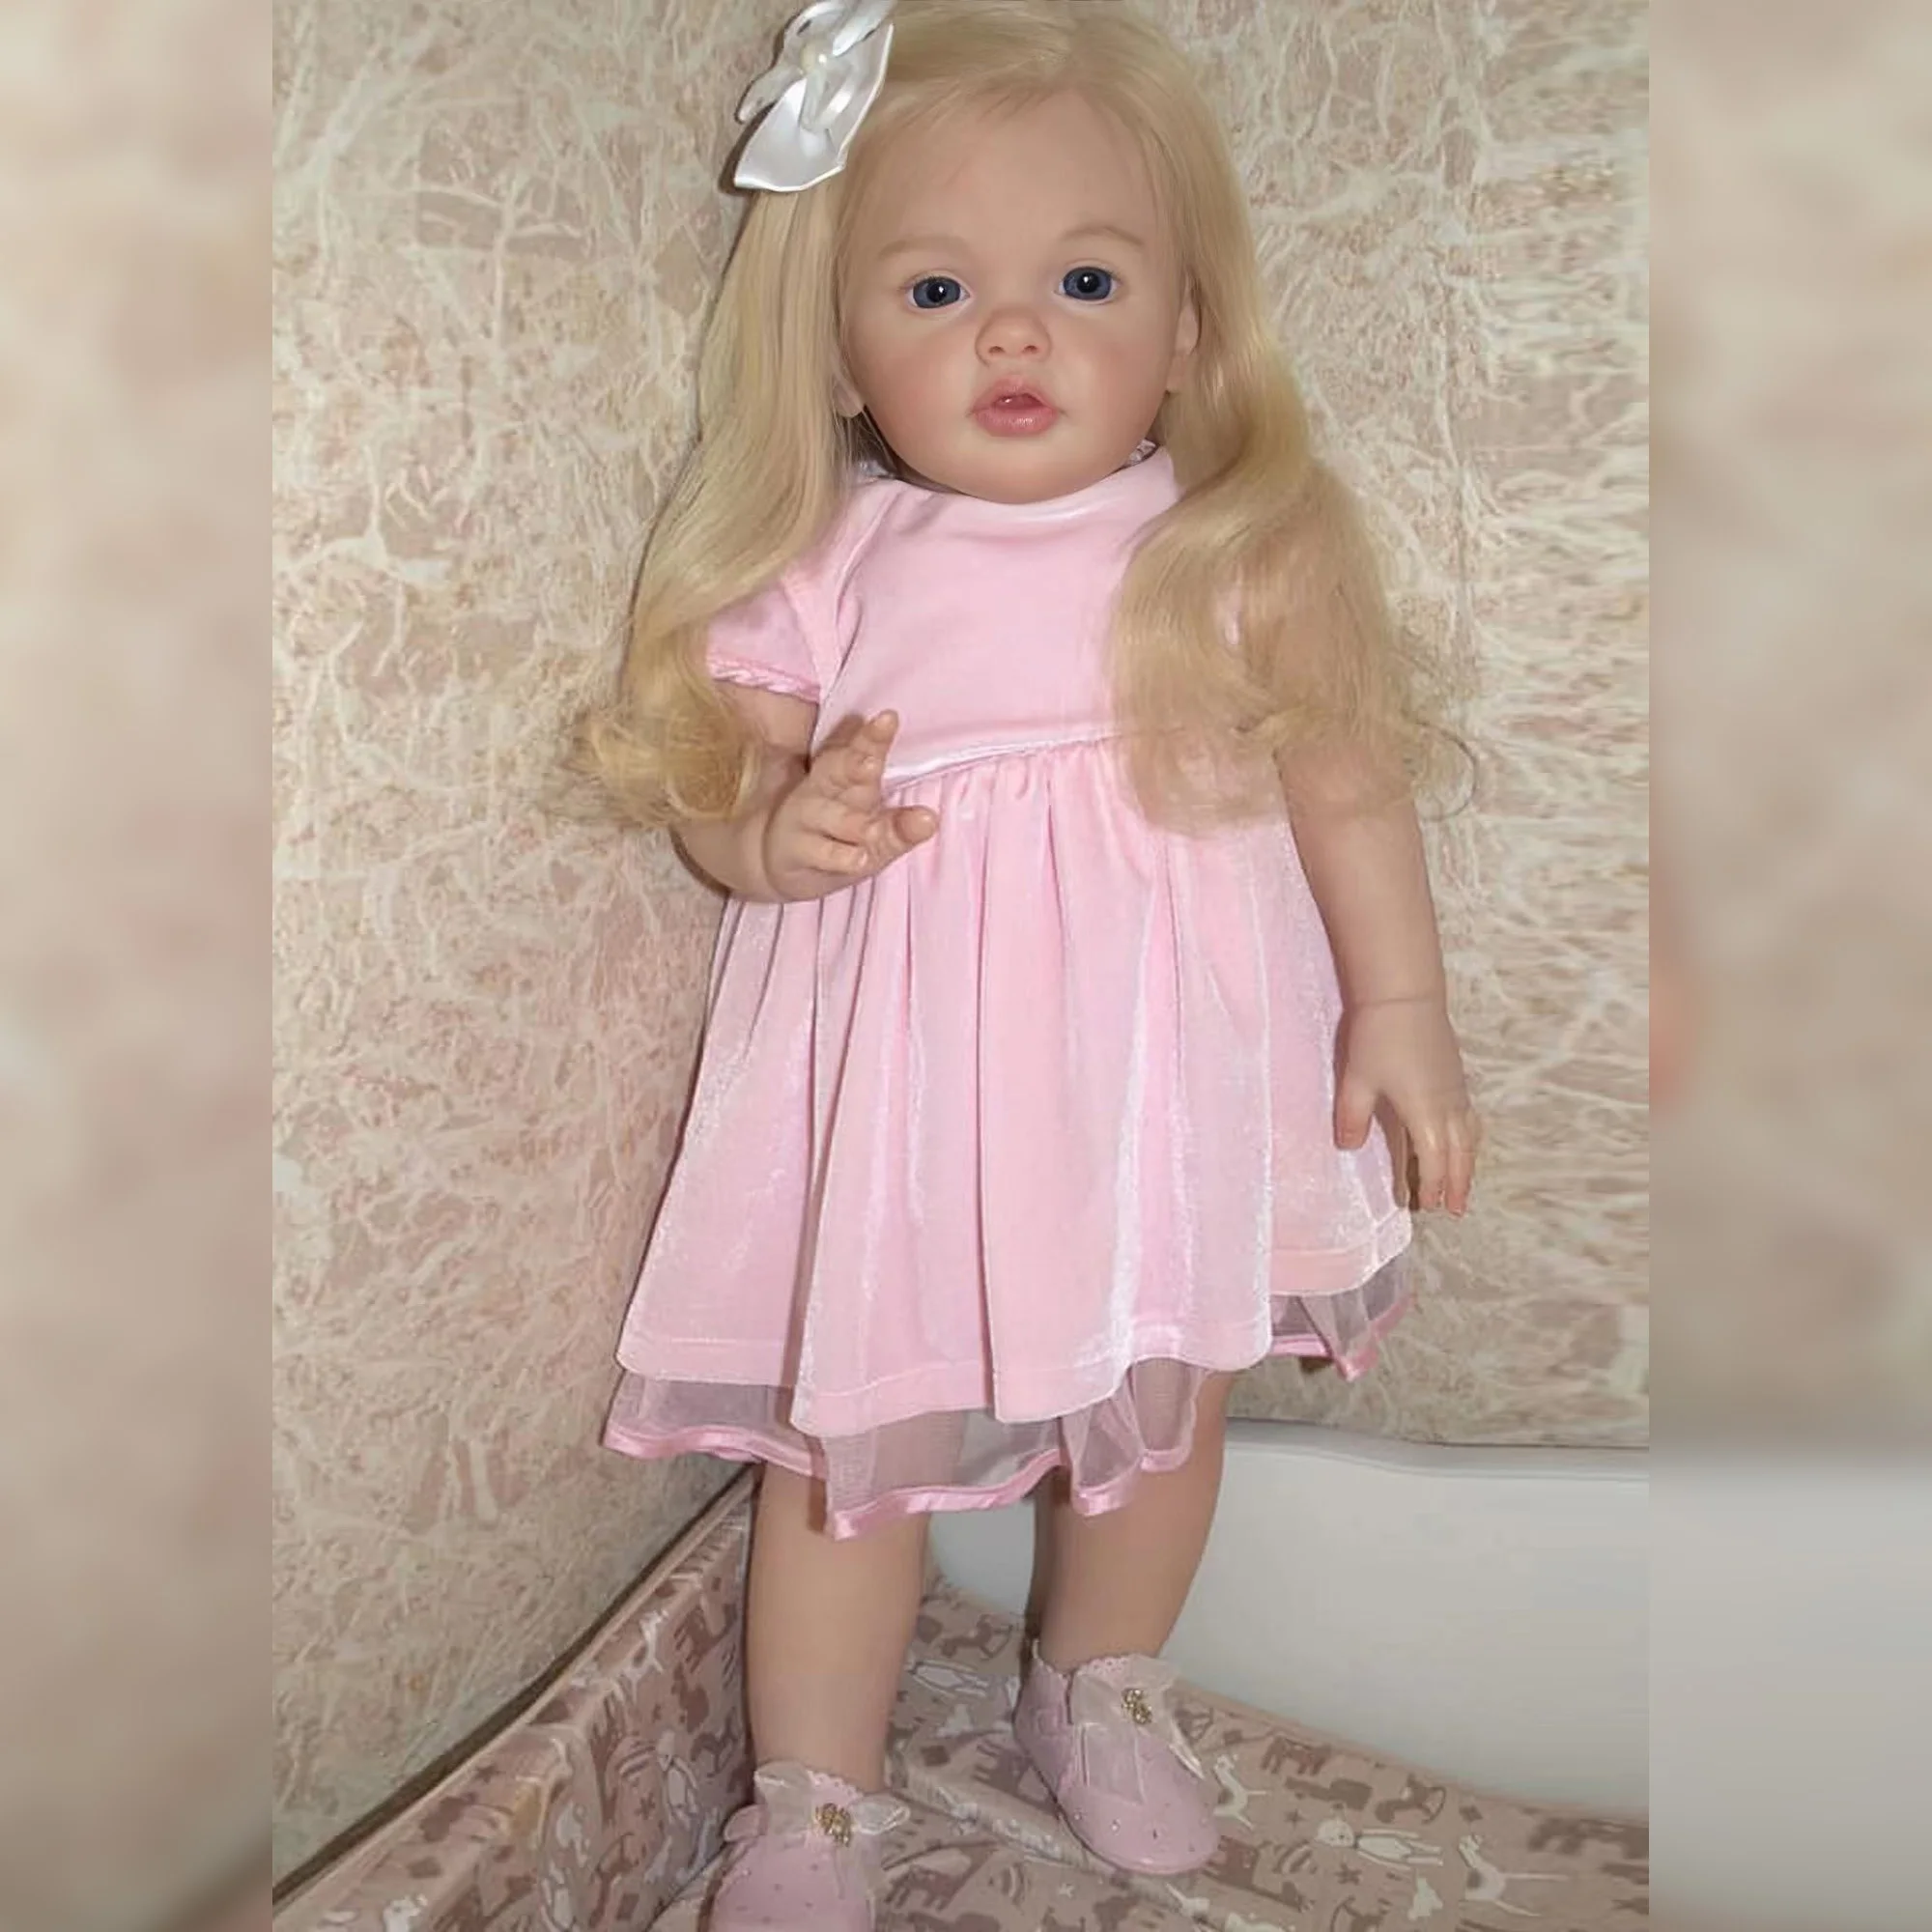 70 См Реалистичная 3D Раскрашенная Кукла Бетти Бебе Реборн Muñecas Reborn Para Niñas bebe reborn reallista В Милой Одежде 0